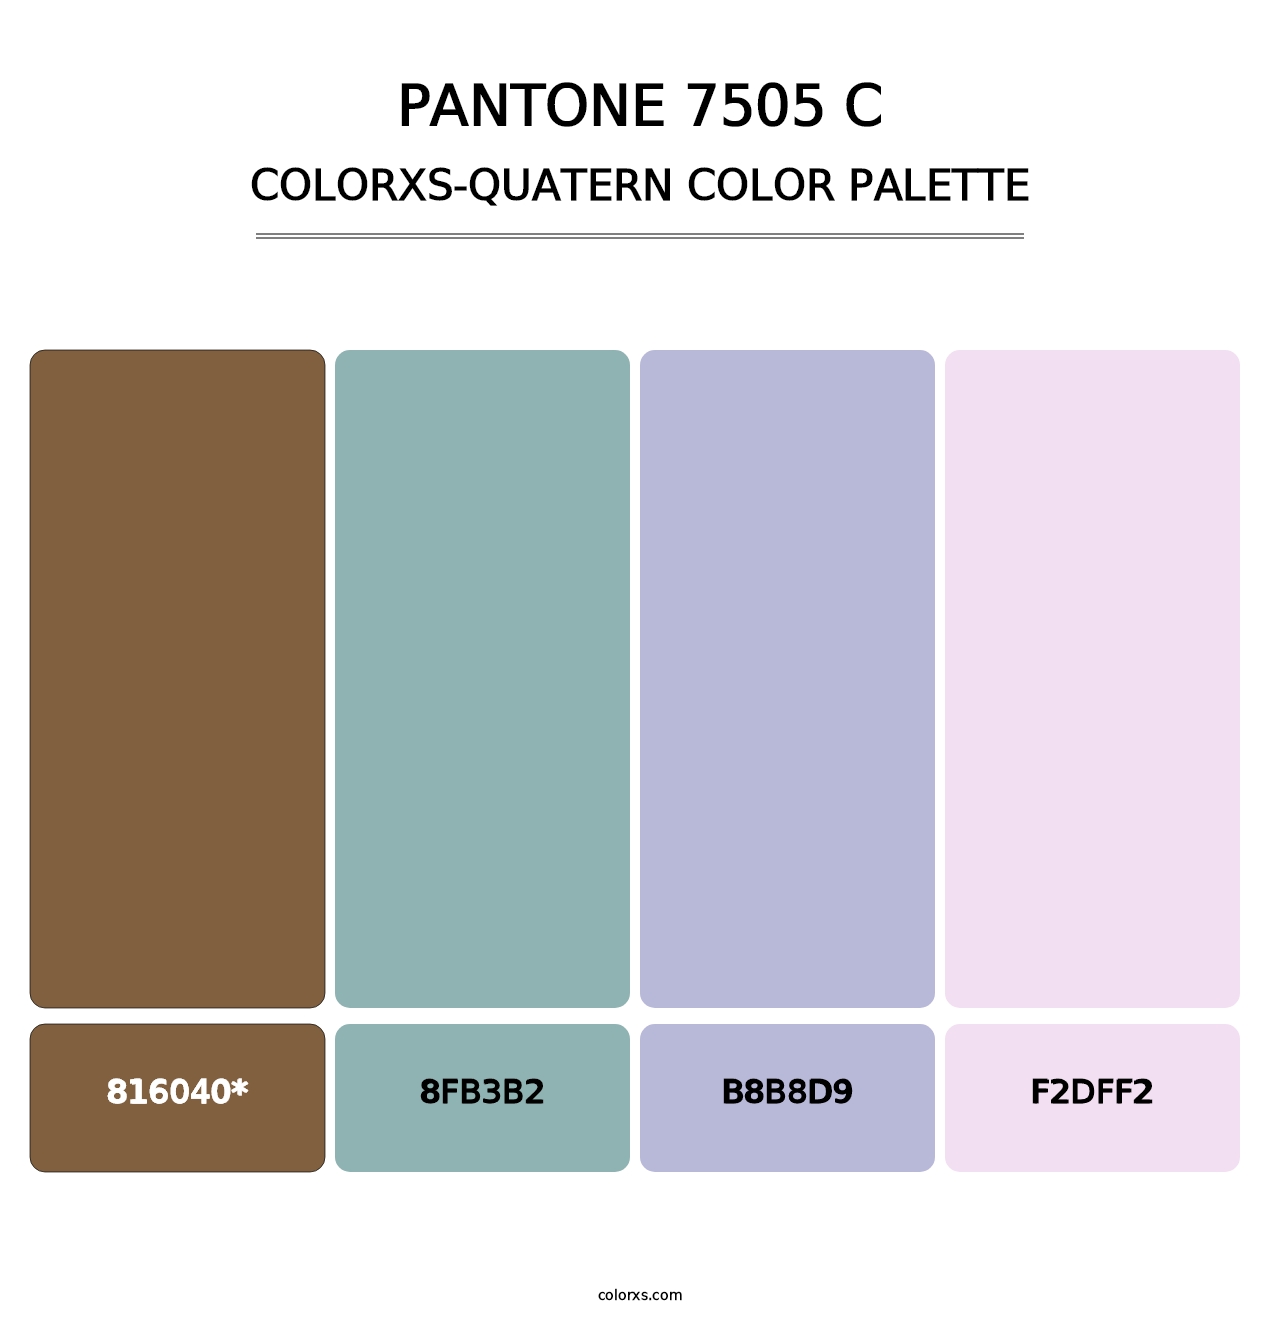 PANTONE 7505 C - Colorxs Quatern Palette